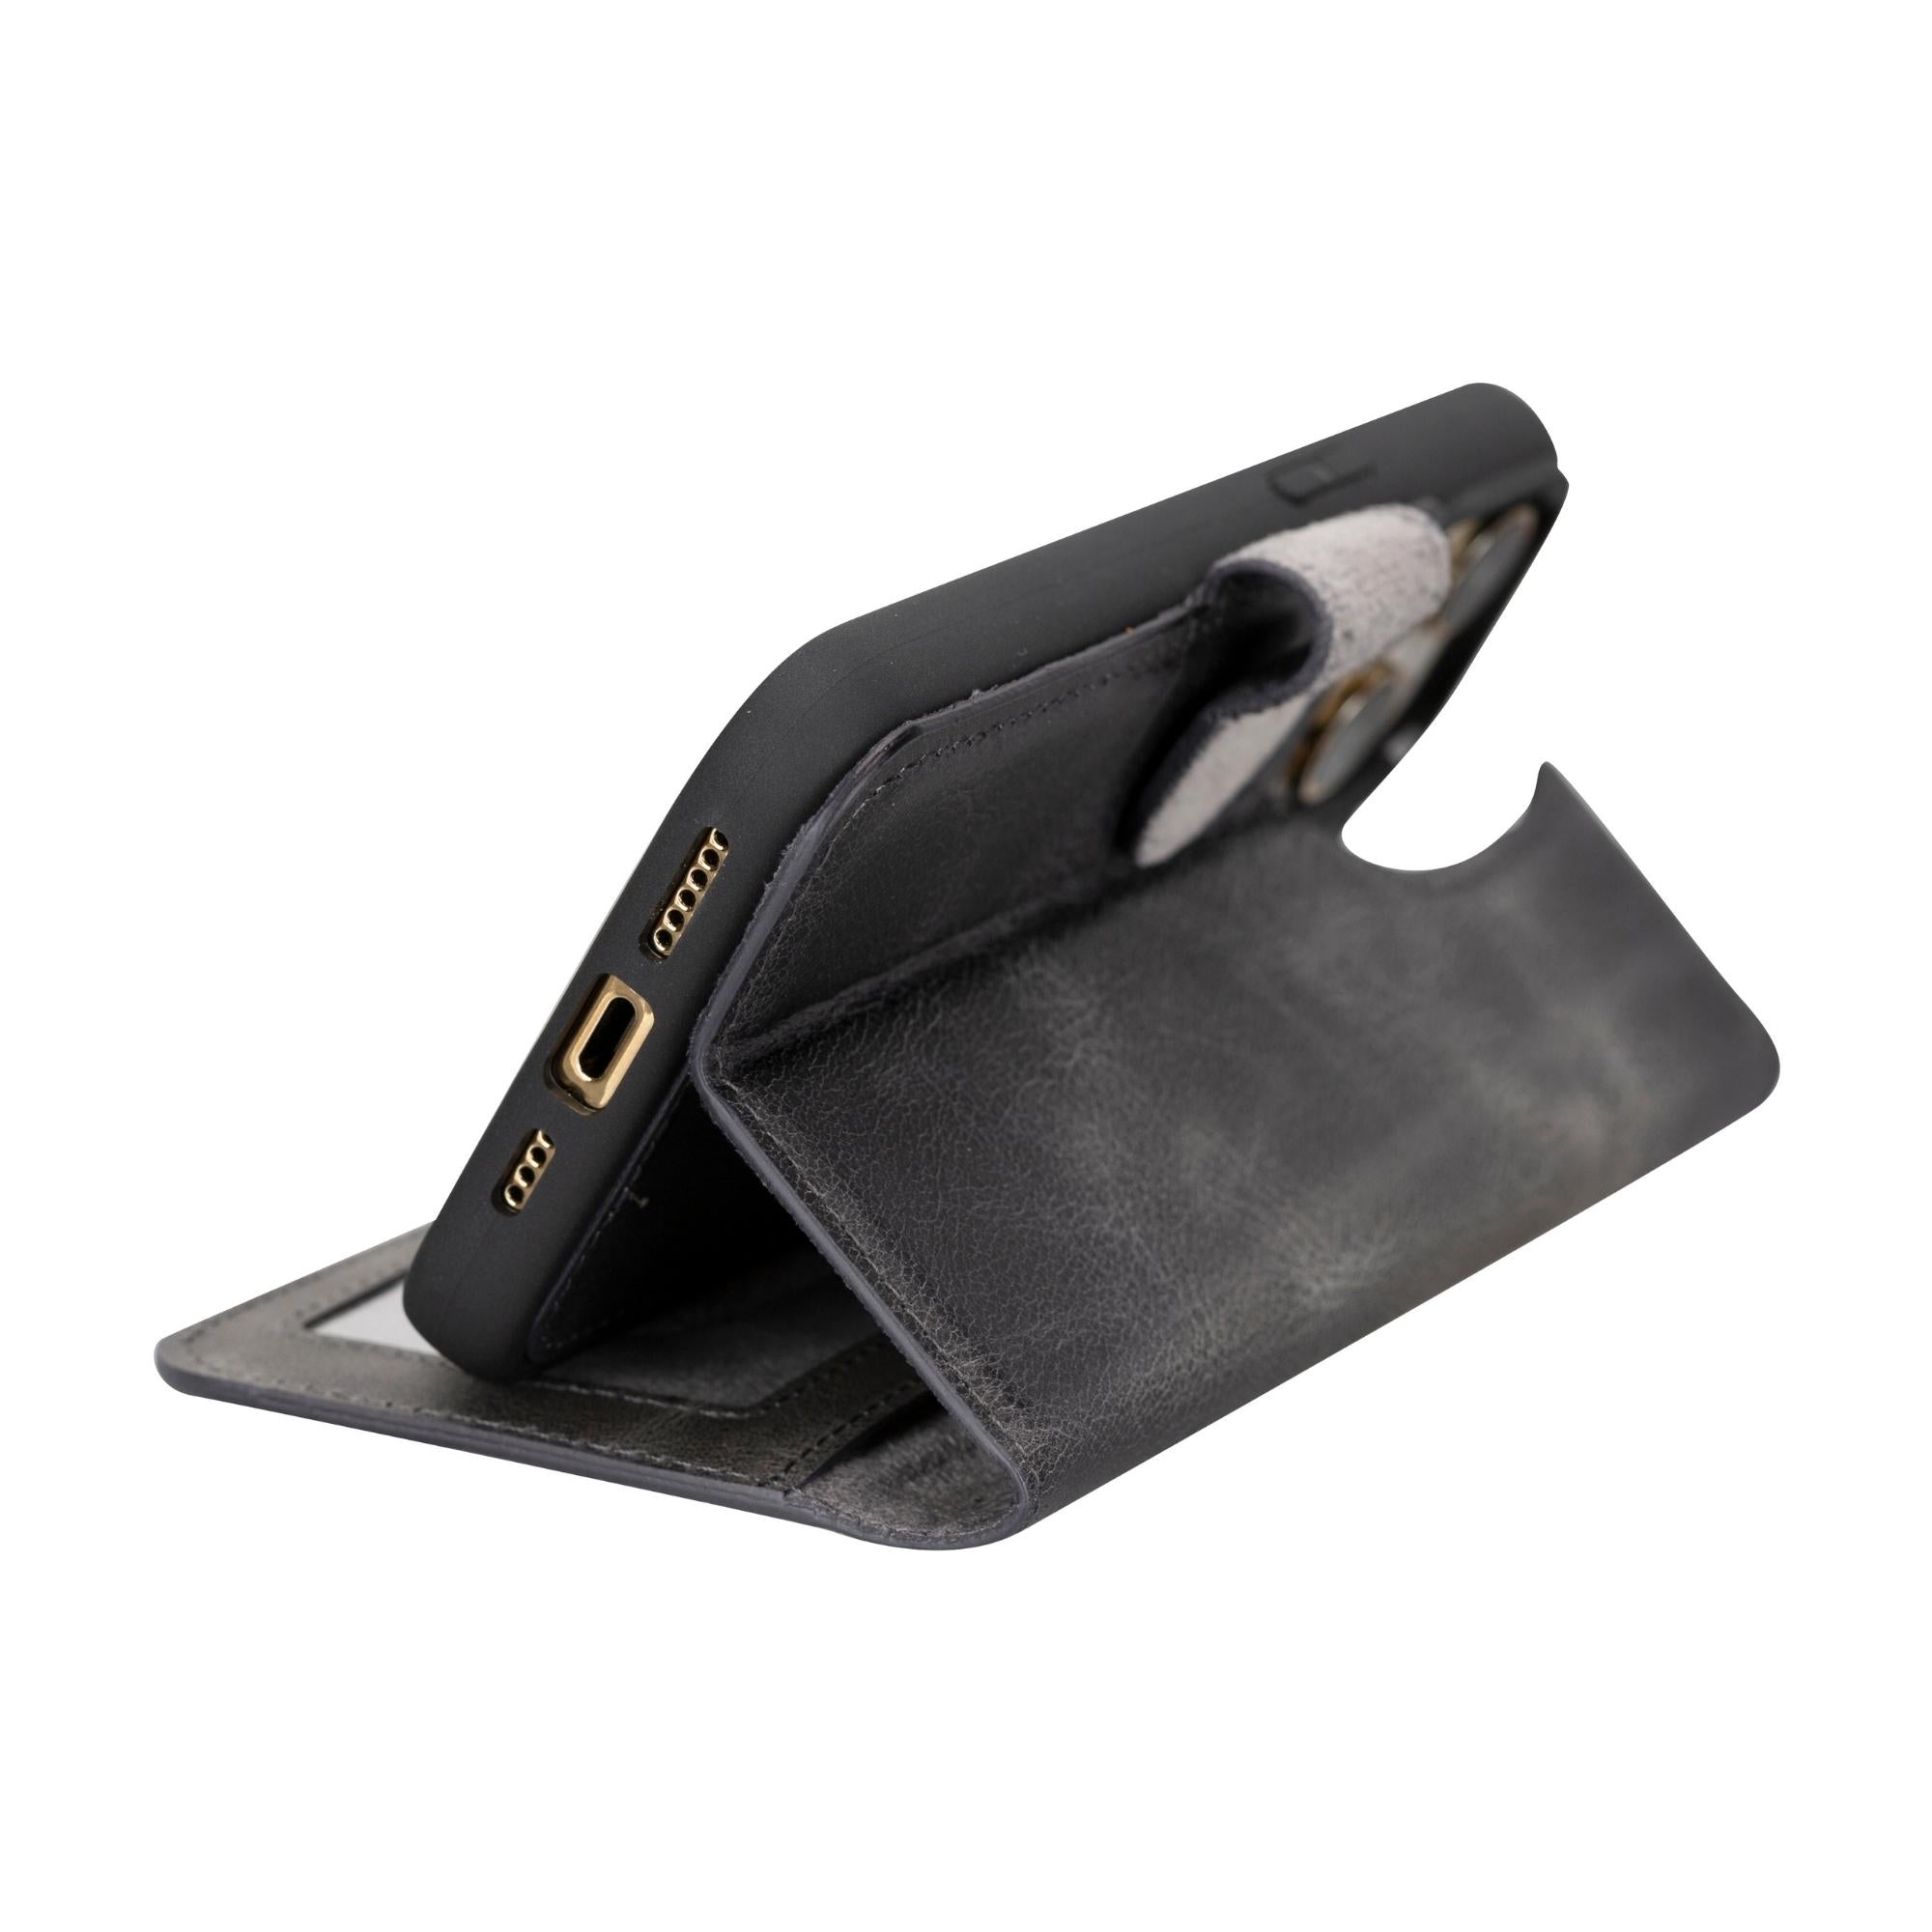 Casper iPhone 14 Series Detachable Leather Wallet Case